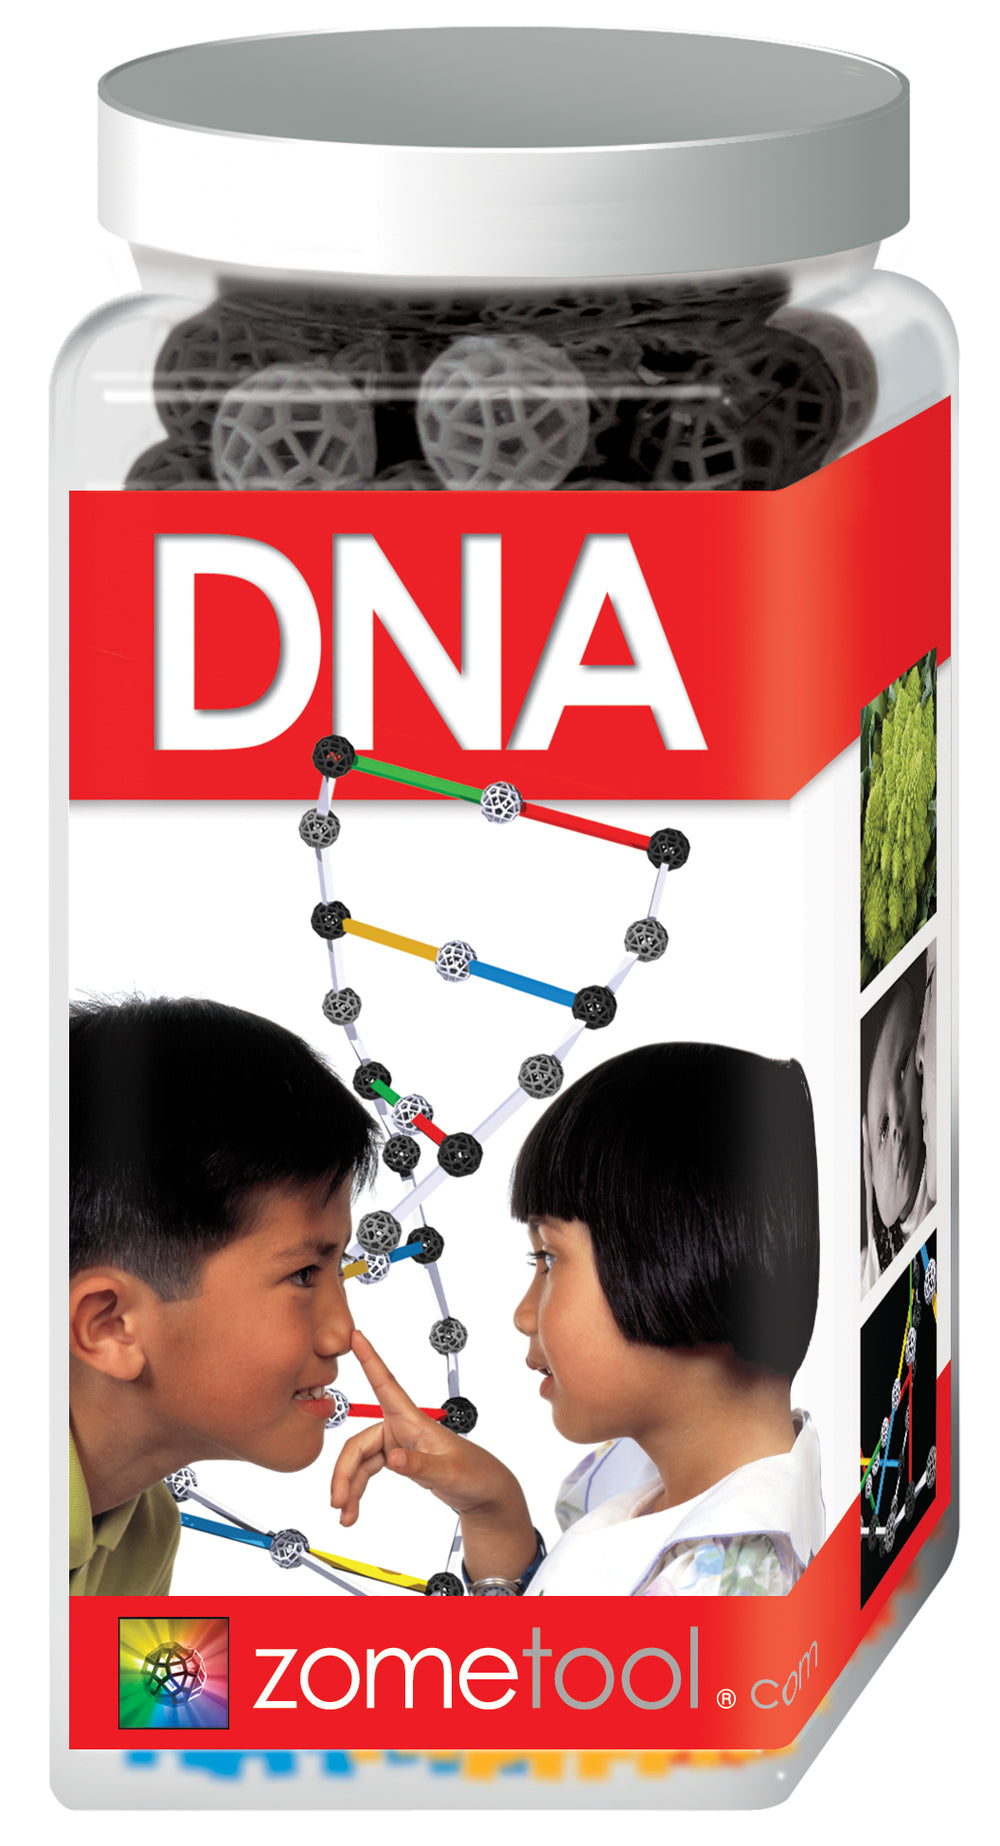 Zometool DNA Projektbausatz